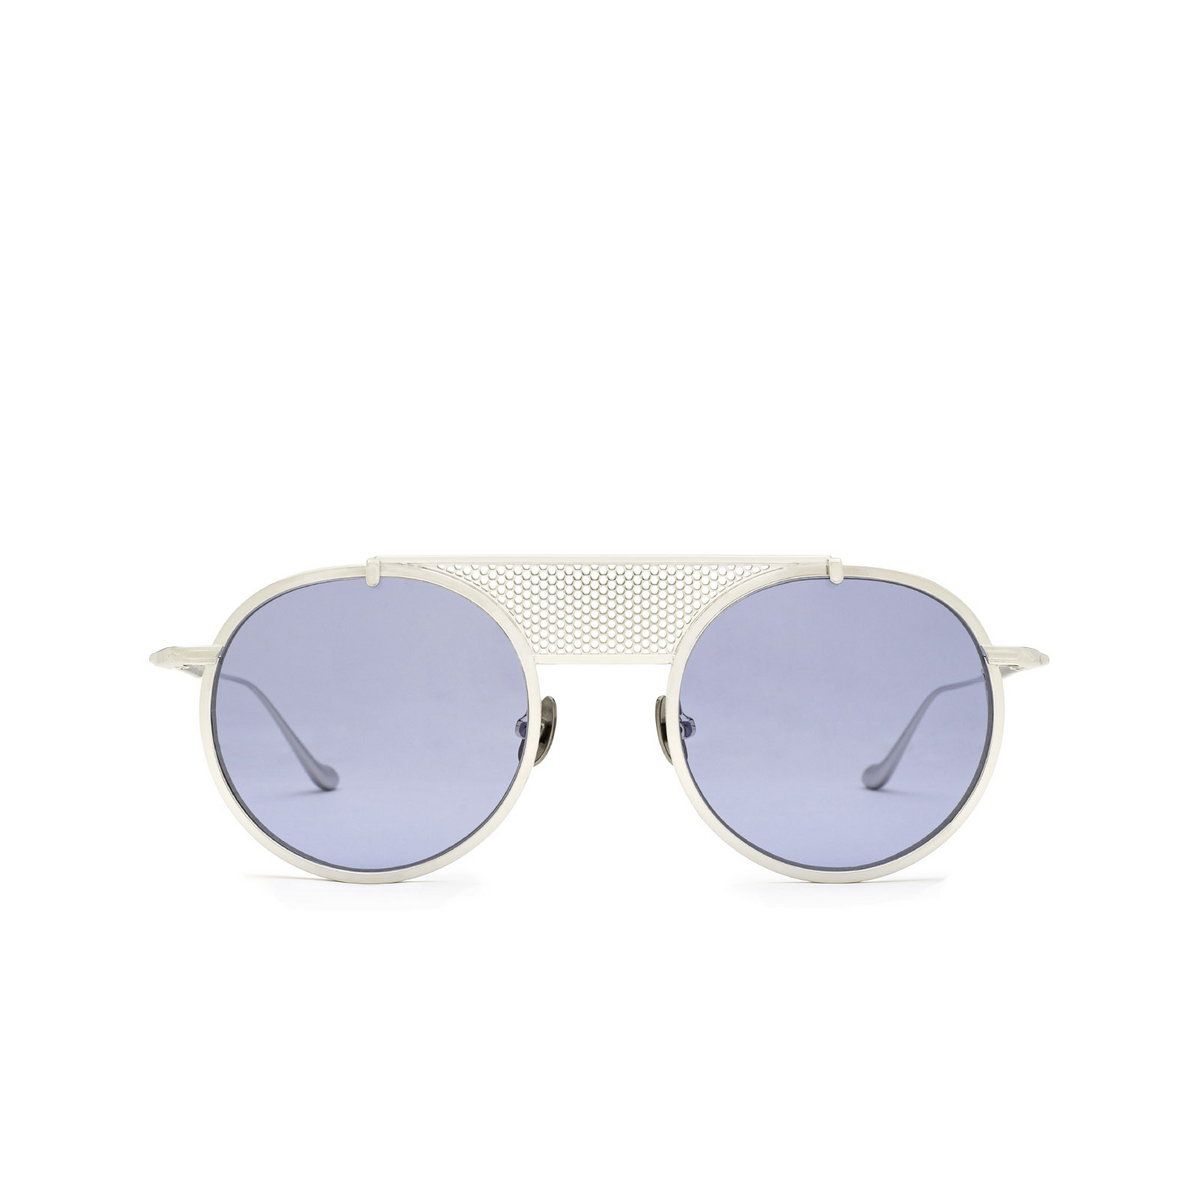 Matsuda® Round Sunglasses: M3097 color Palladium White Pw - front view.